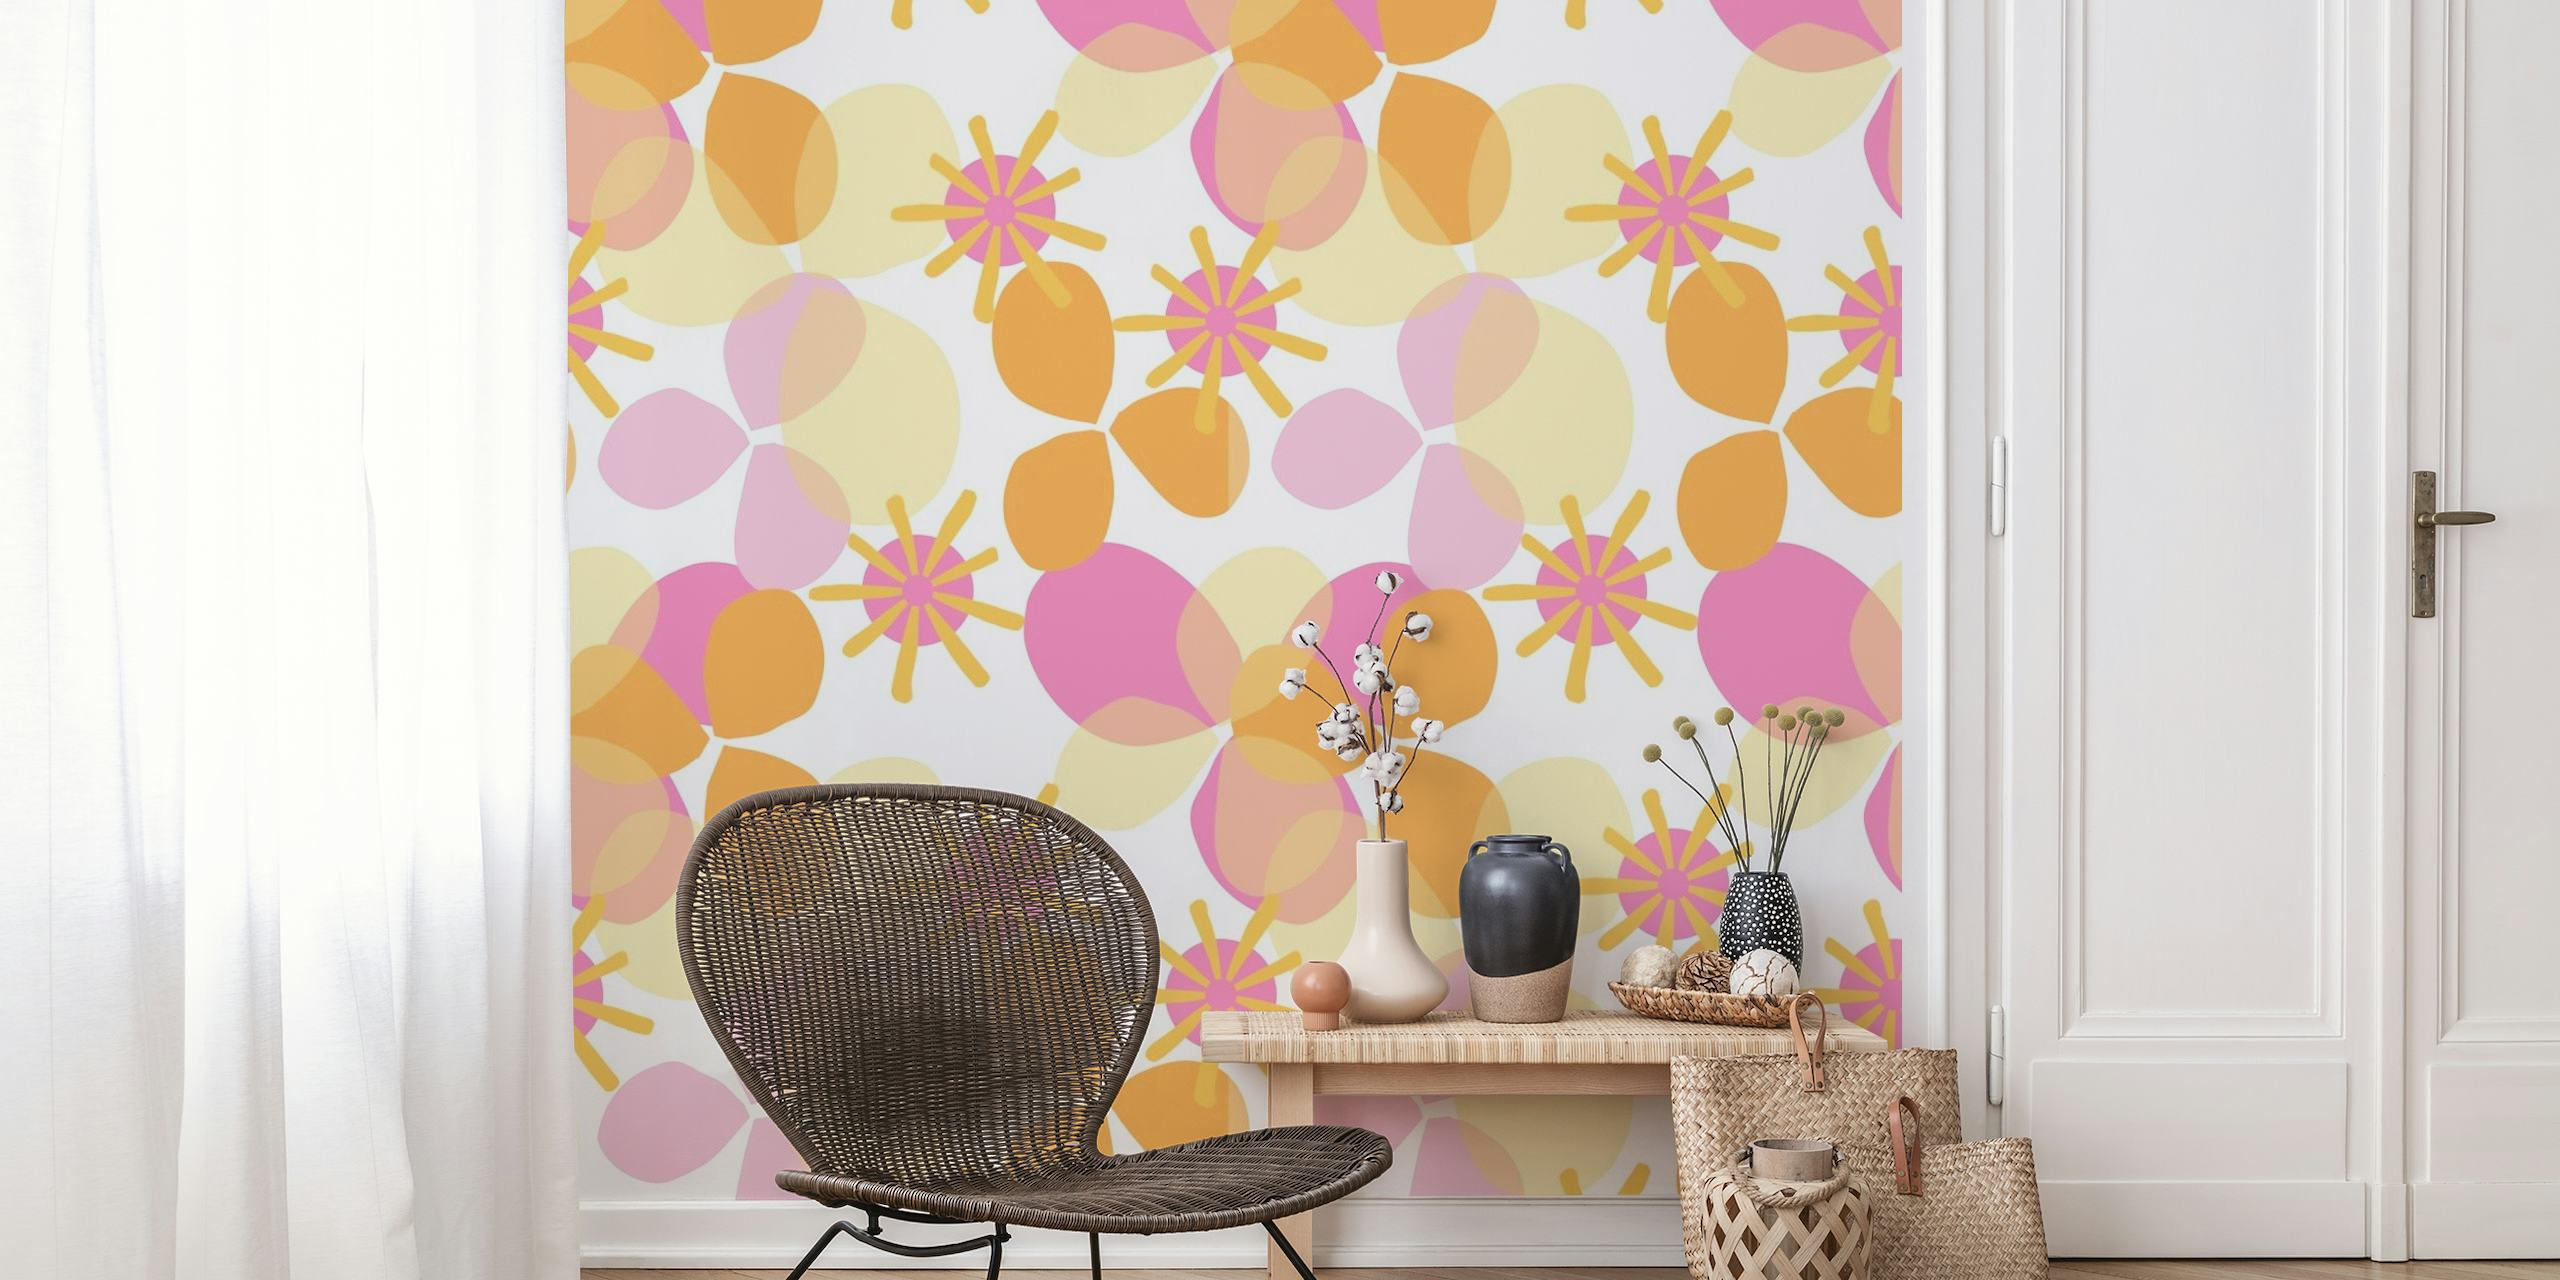 Mural de parede colorido com padrão geométrico e floral chamado Party Play